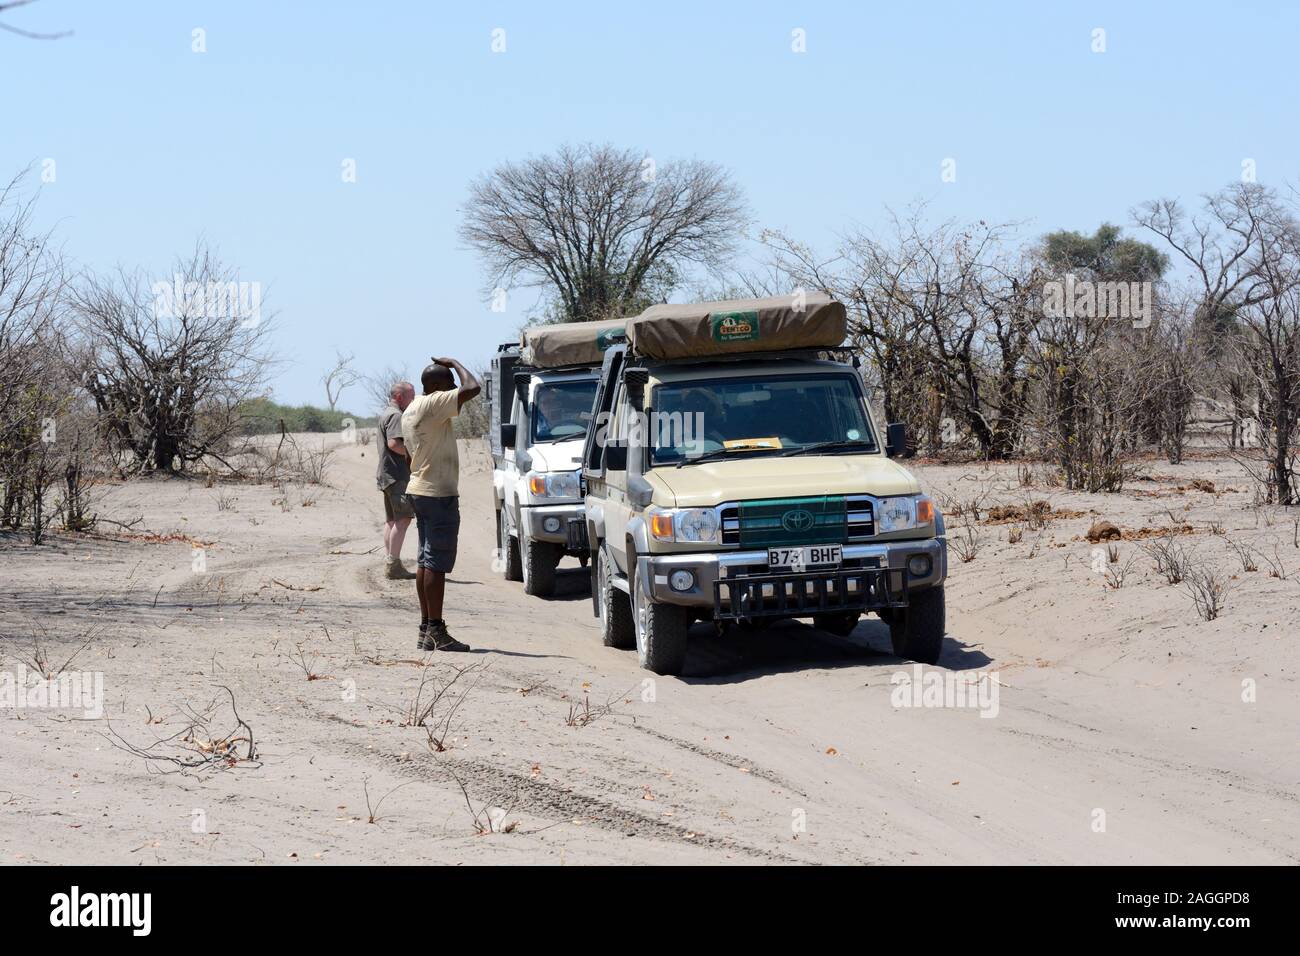 Touristische jeeps Fahrzeuge auf einem Sand sandiger Straße in Chobe Nationalpark Botswana Afrika Stockfoto